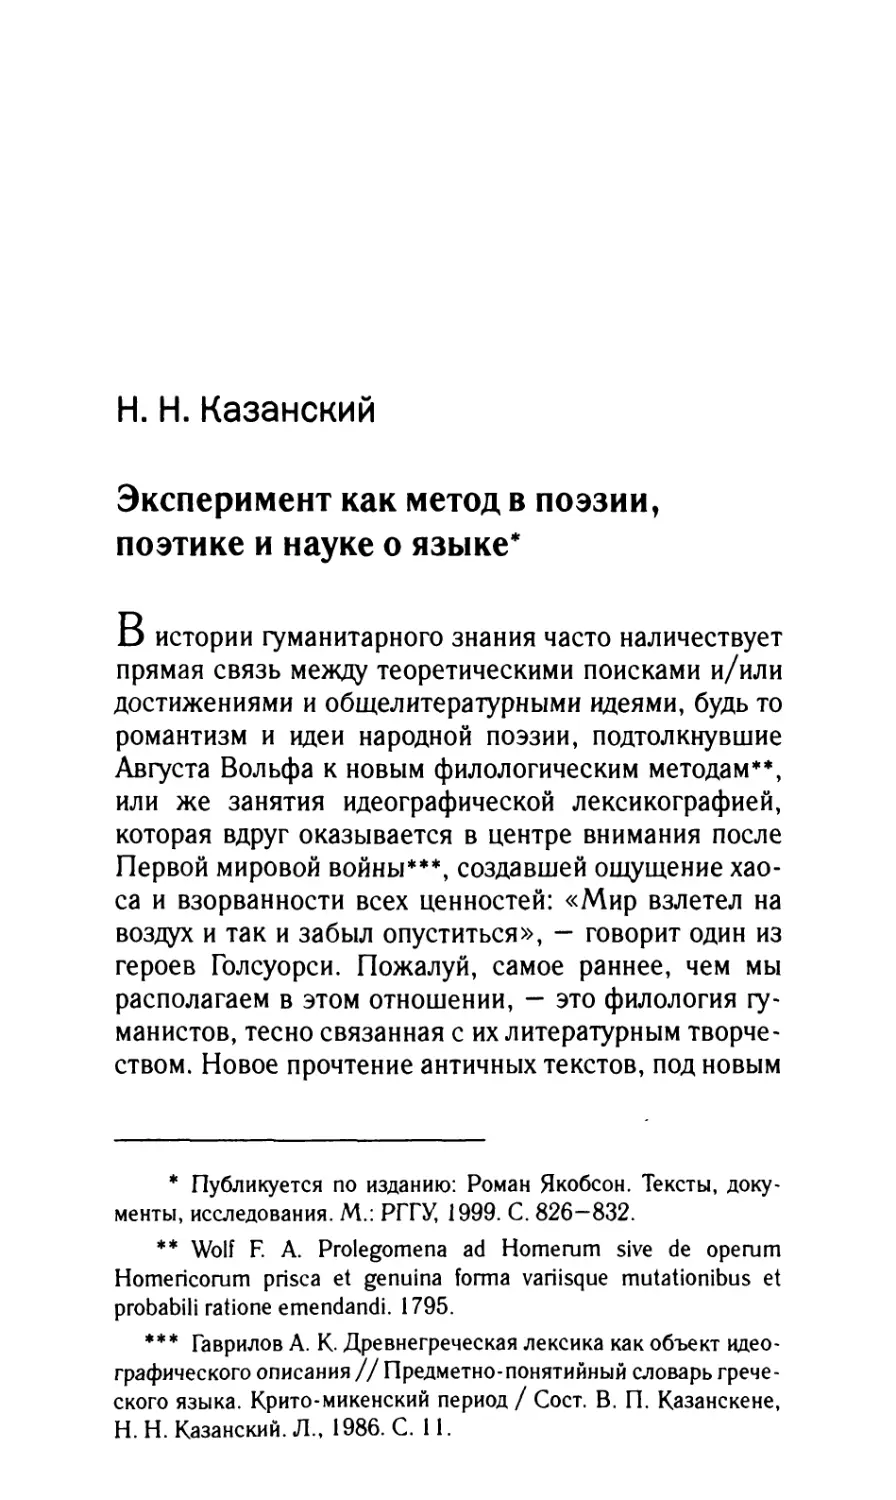 Казанский H.H. Эксперимент как метод в поэзии, поэтике и науке о языке